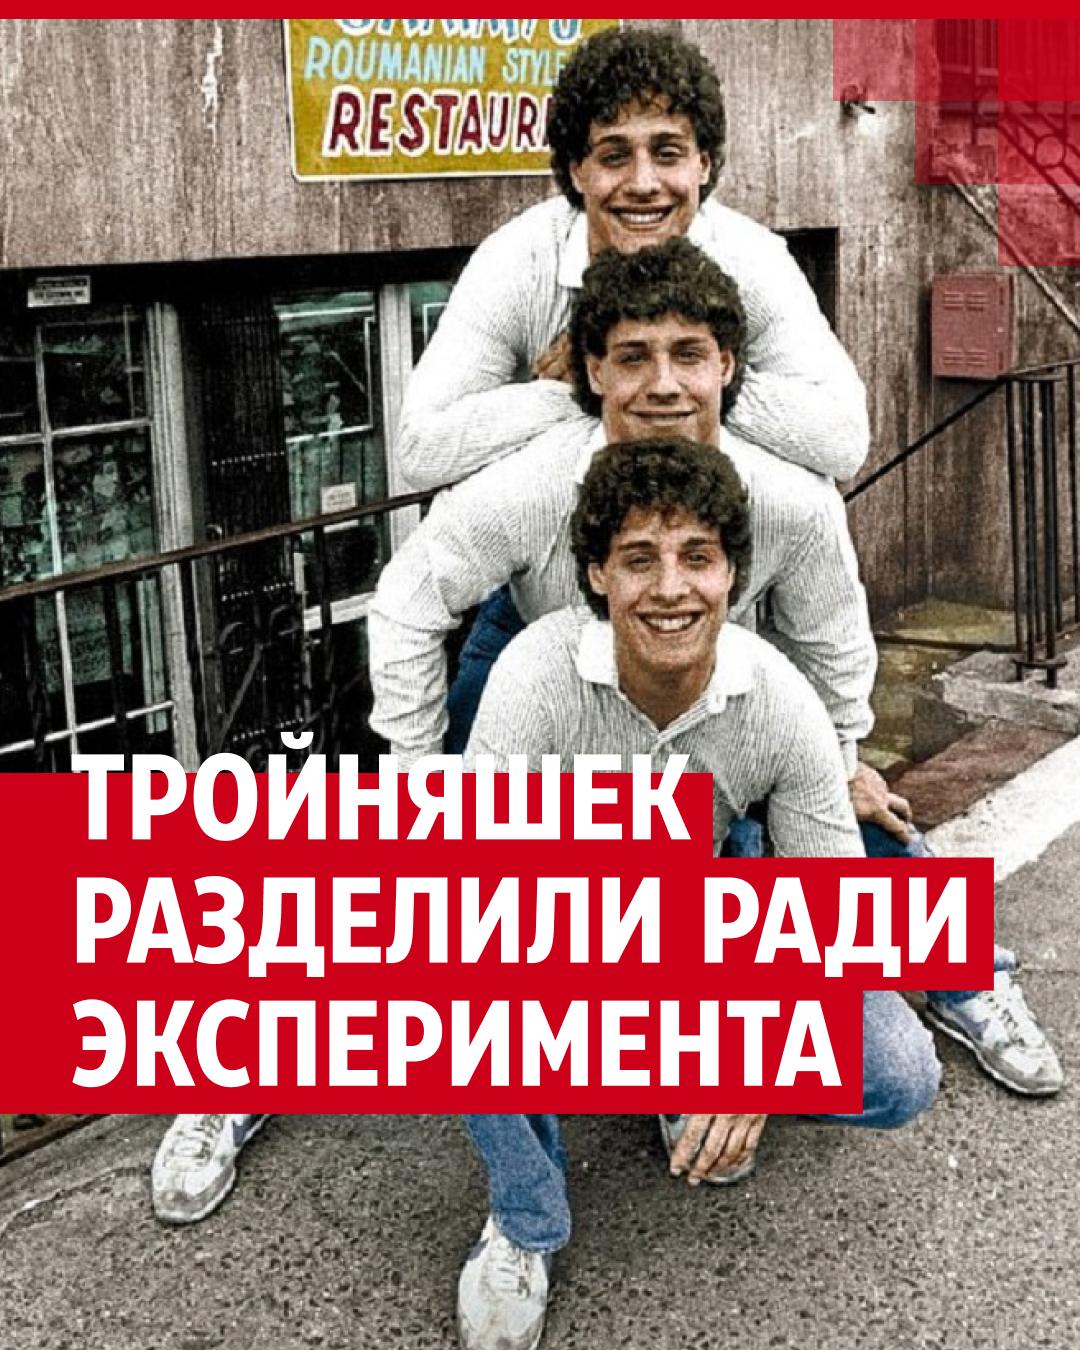 Тройняшек разделили ради эксперимента психиатра Нойбауэра, но они случайно  встретились через 19 лет - 14 октября 2023 - v1.ru